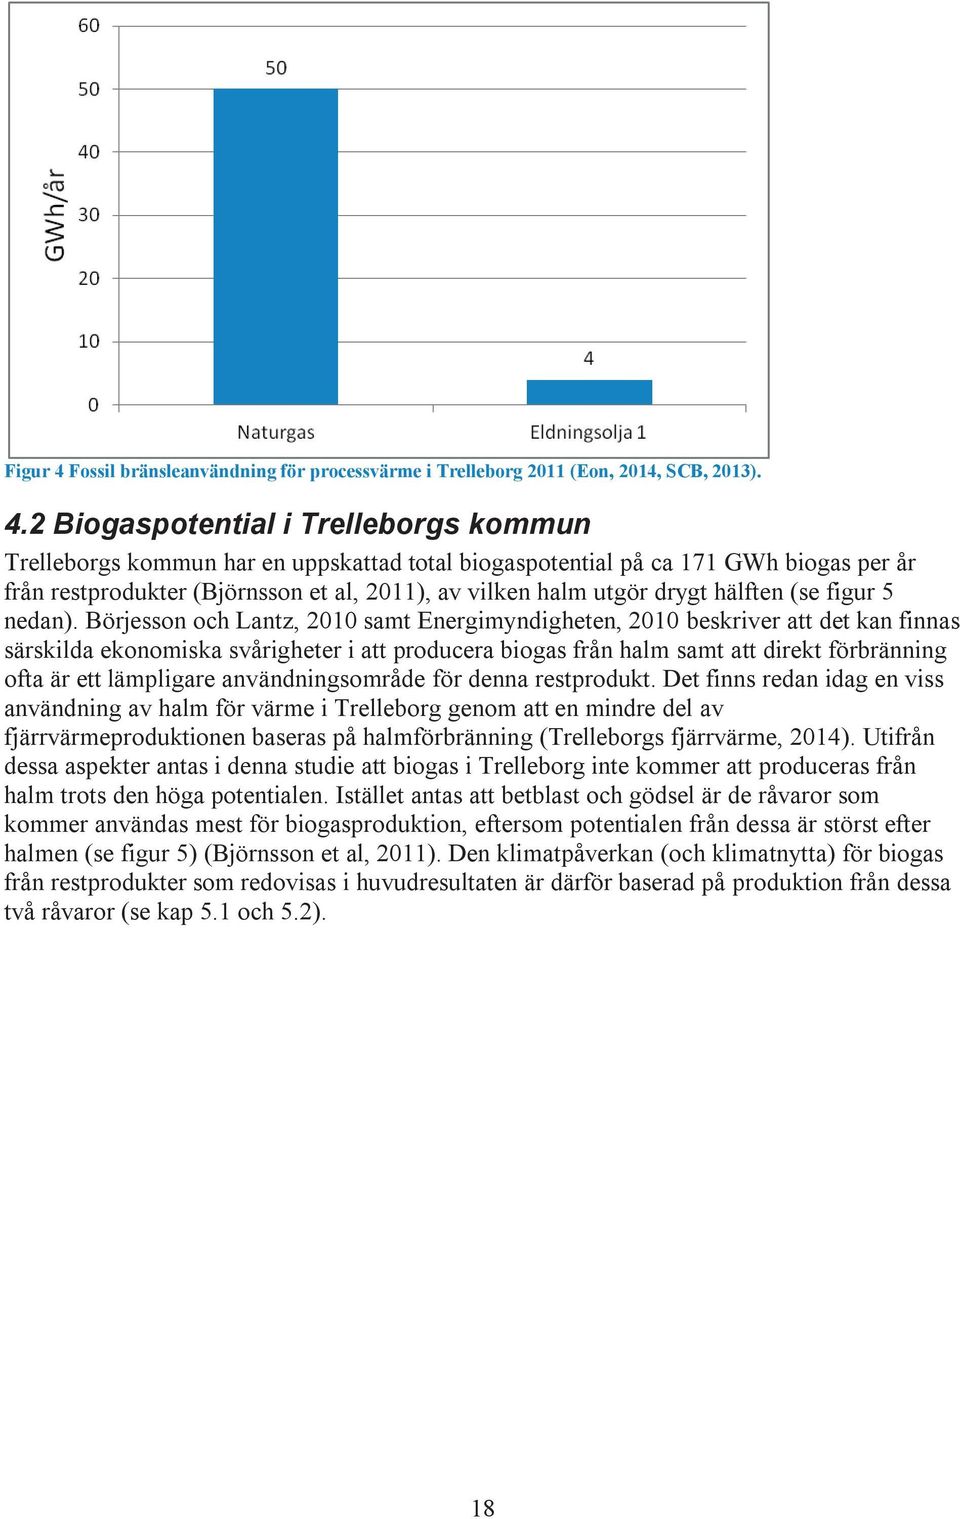 2 Biogaspotential i Trelleborgs kommun Trelleborgs kommun har en uppskattad total biogaspotential på ca 171 GWh biogas per år från restprodukter (Björnsson et al, 2011), av vilken halm utgör drygt